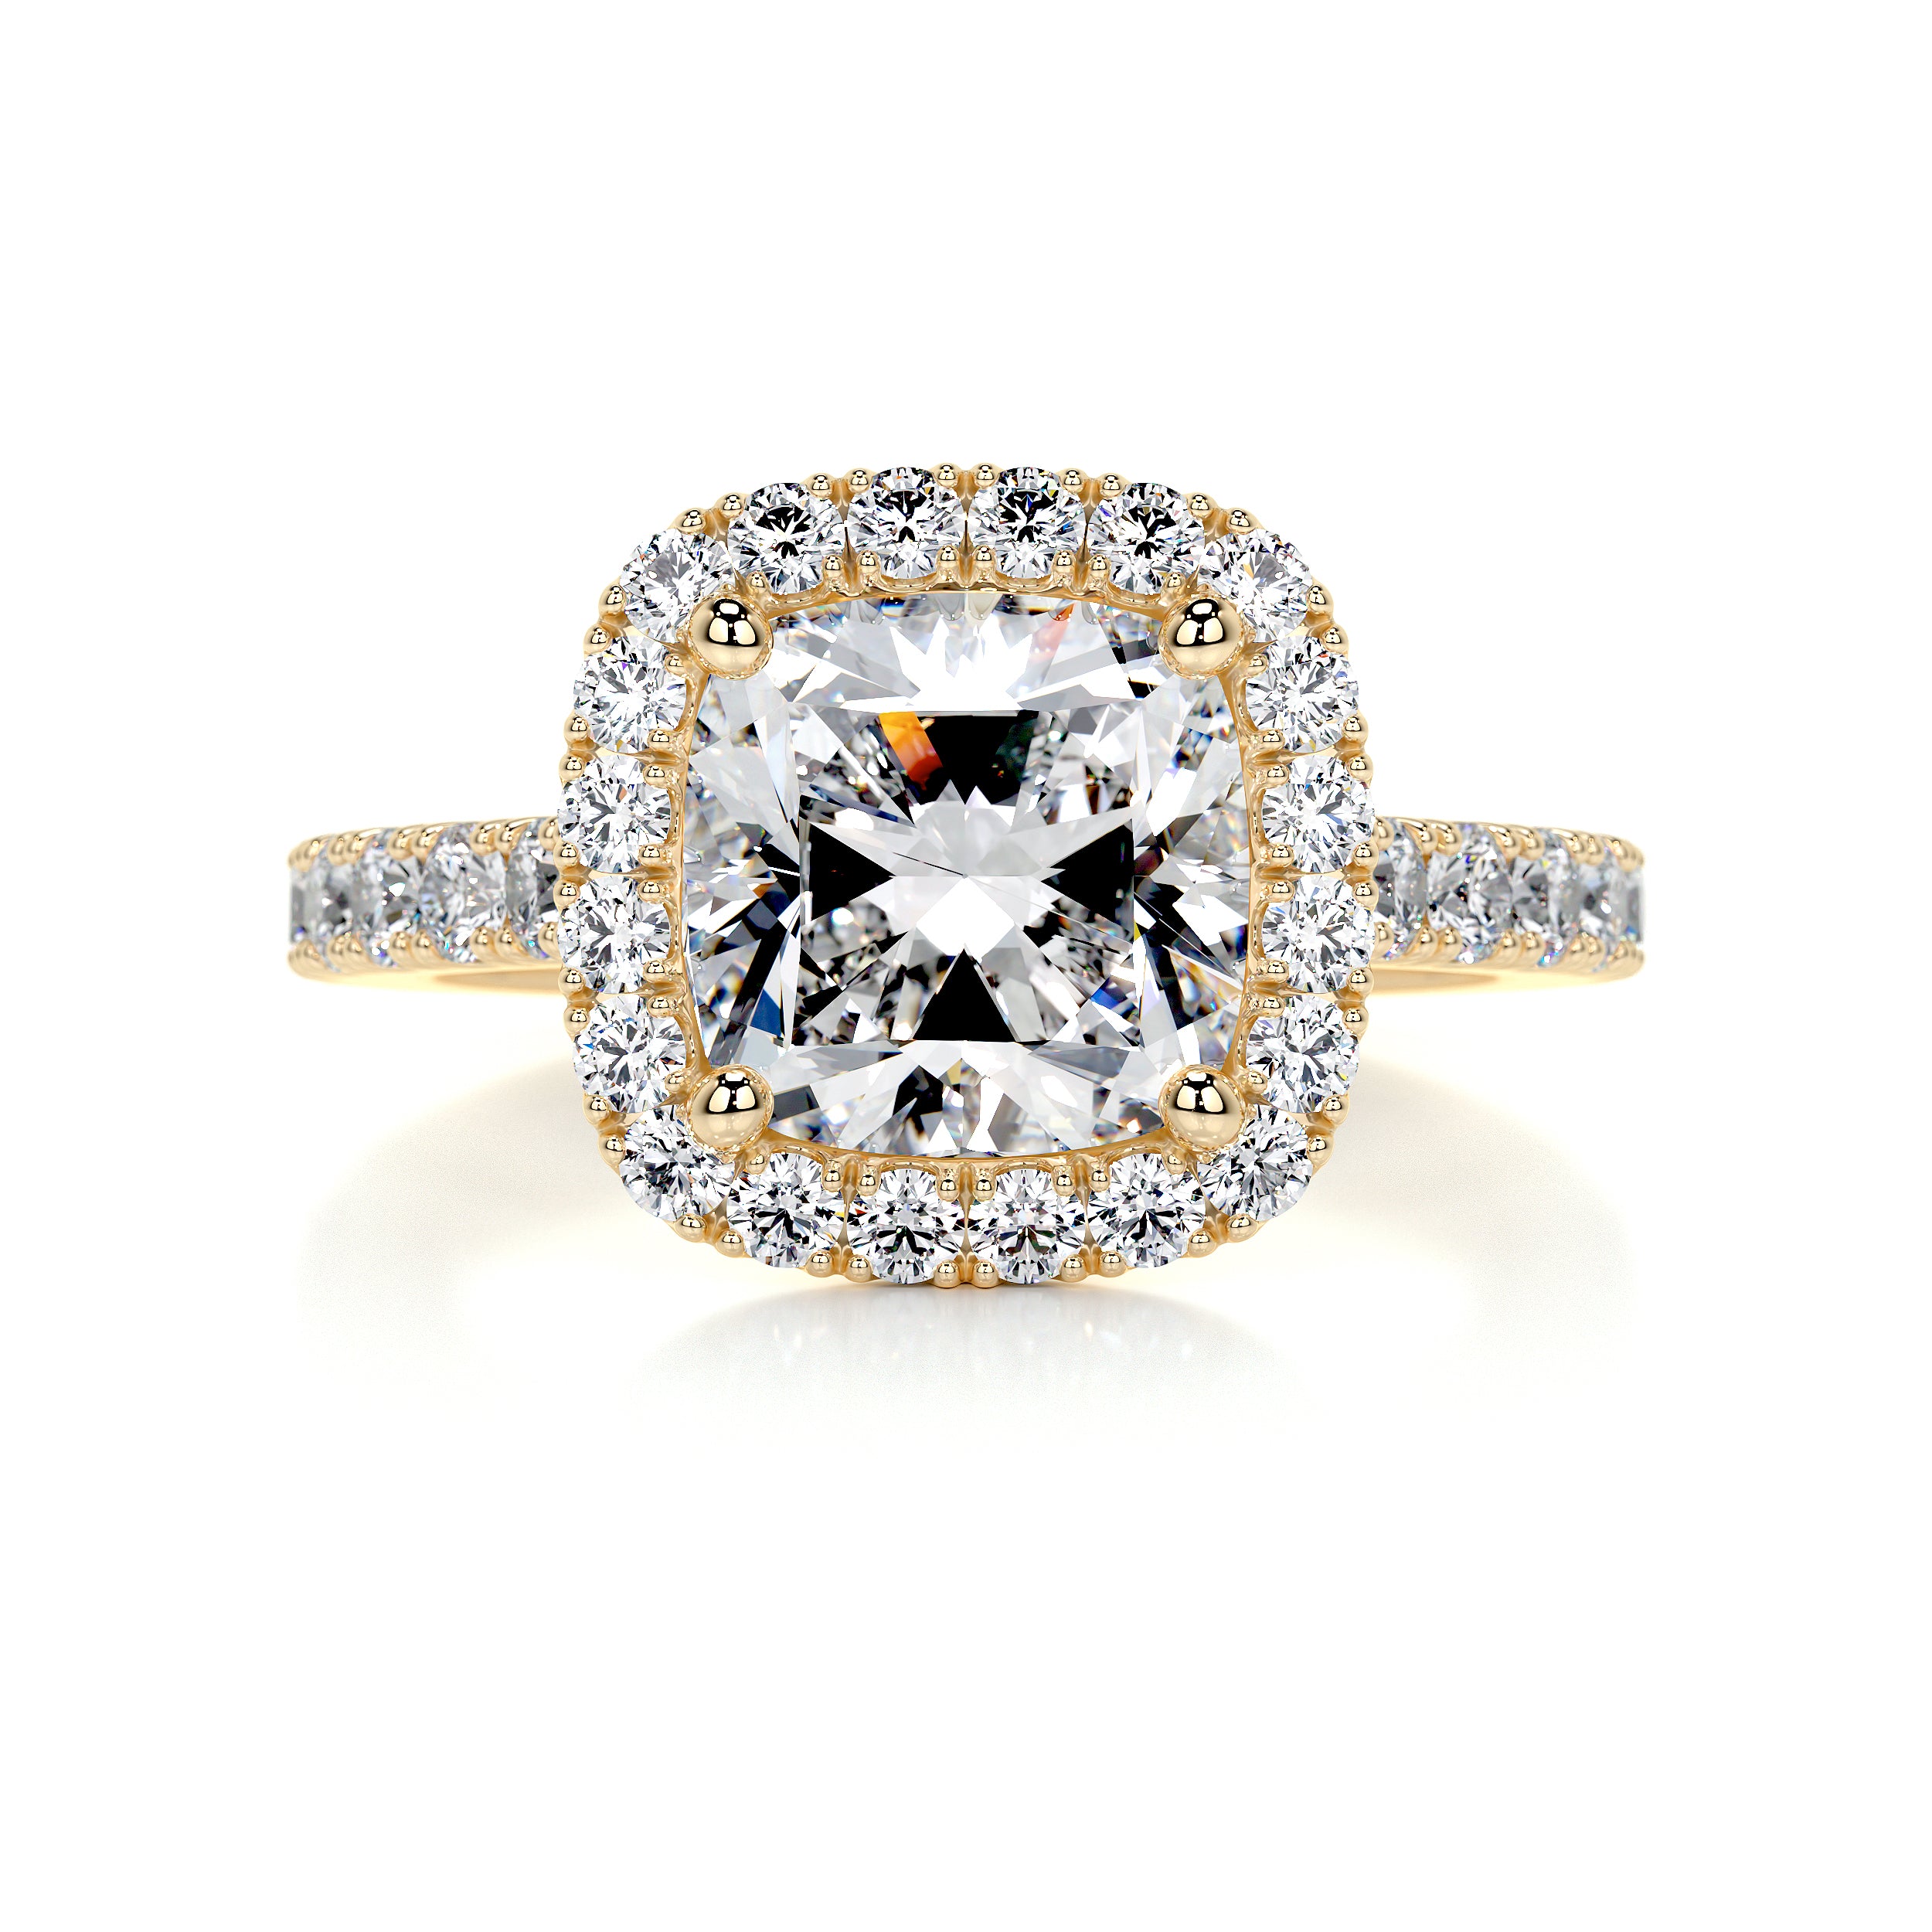 Celeste Moissanite & Diamonds Ring   (3 Carat) -18K Yellow Gold